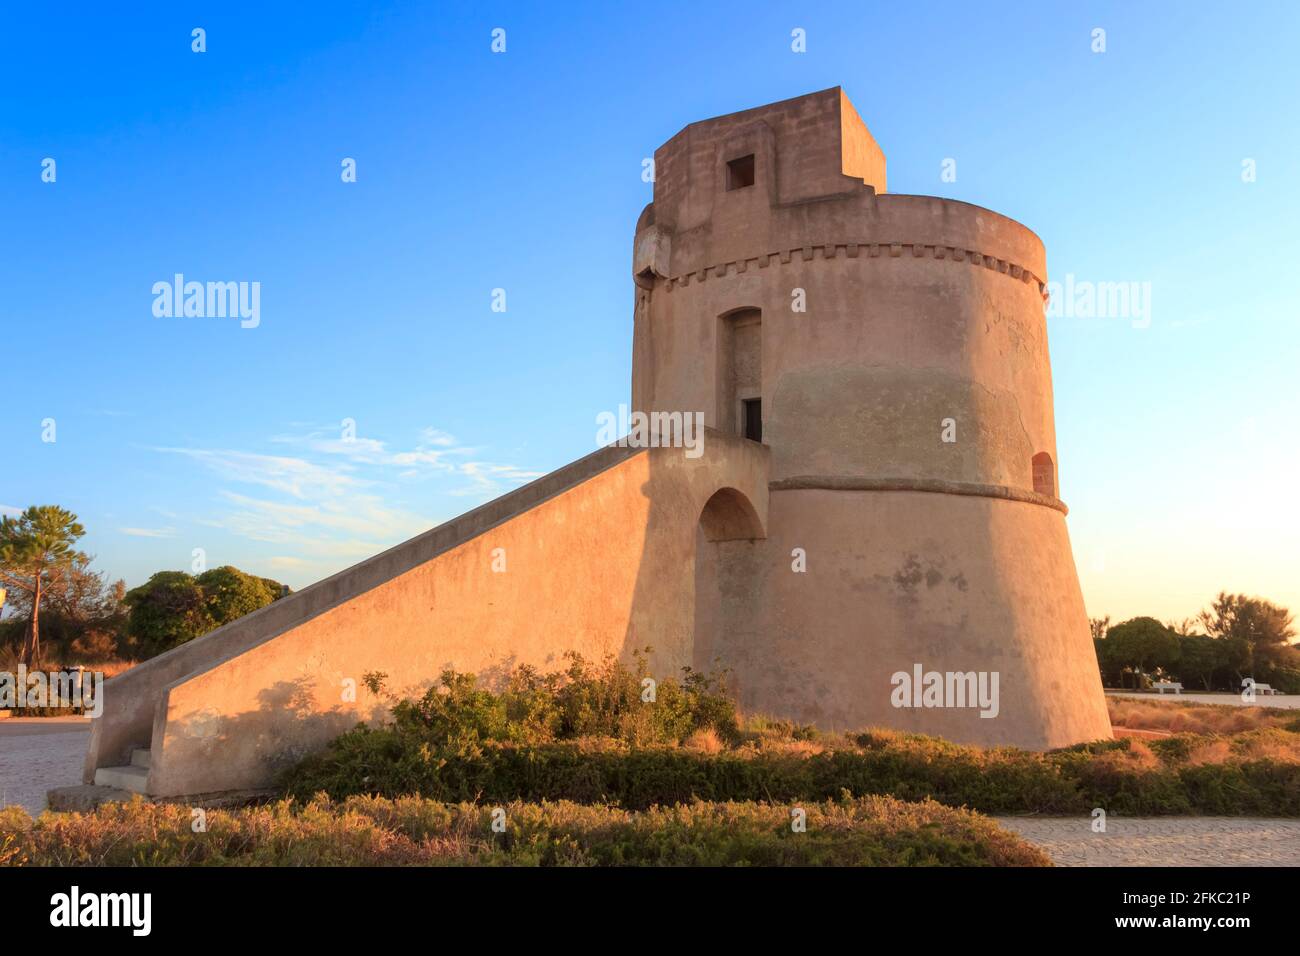 Torre Suda wurde im 16. Jahrhundert gegen türkische Invasionen errichtet, die die Halbinsel Salento, Italien (Apulien), heimgesucht hatten. Stockfoto